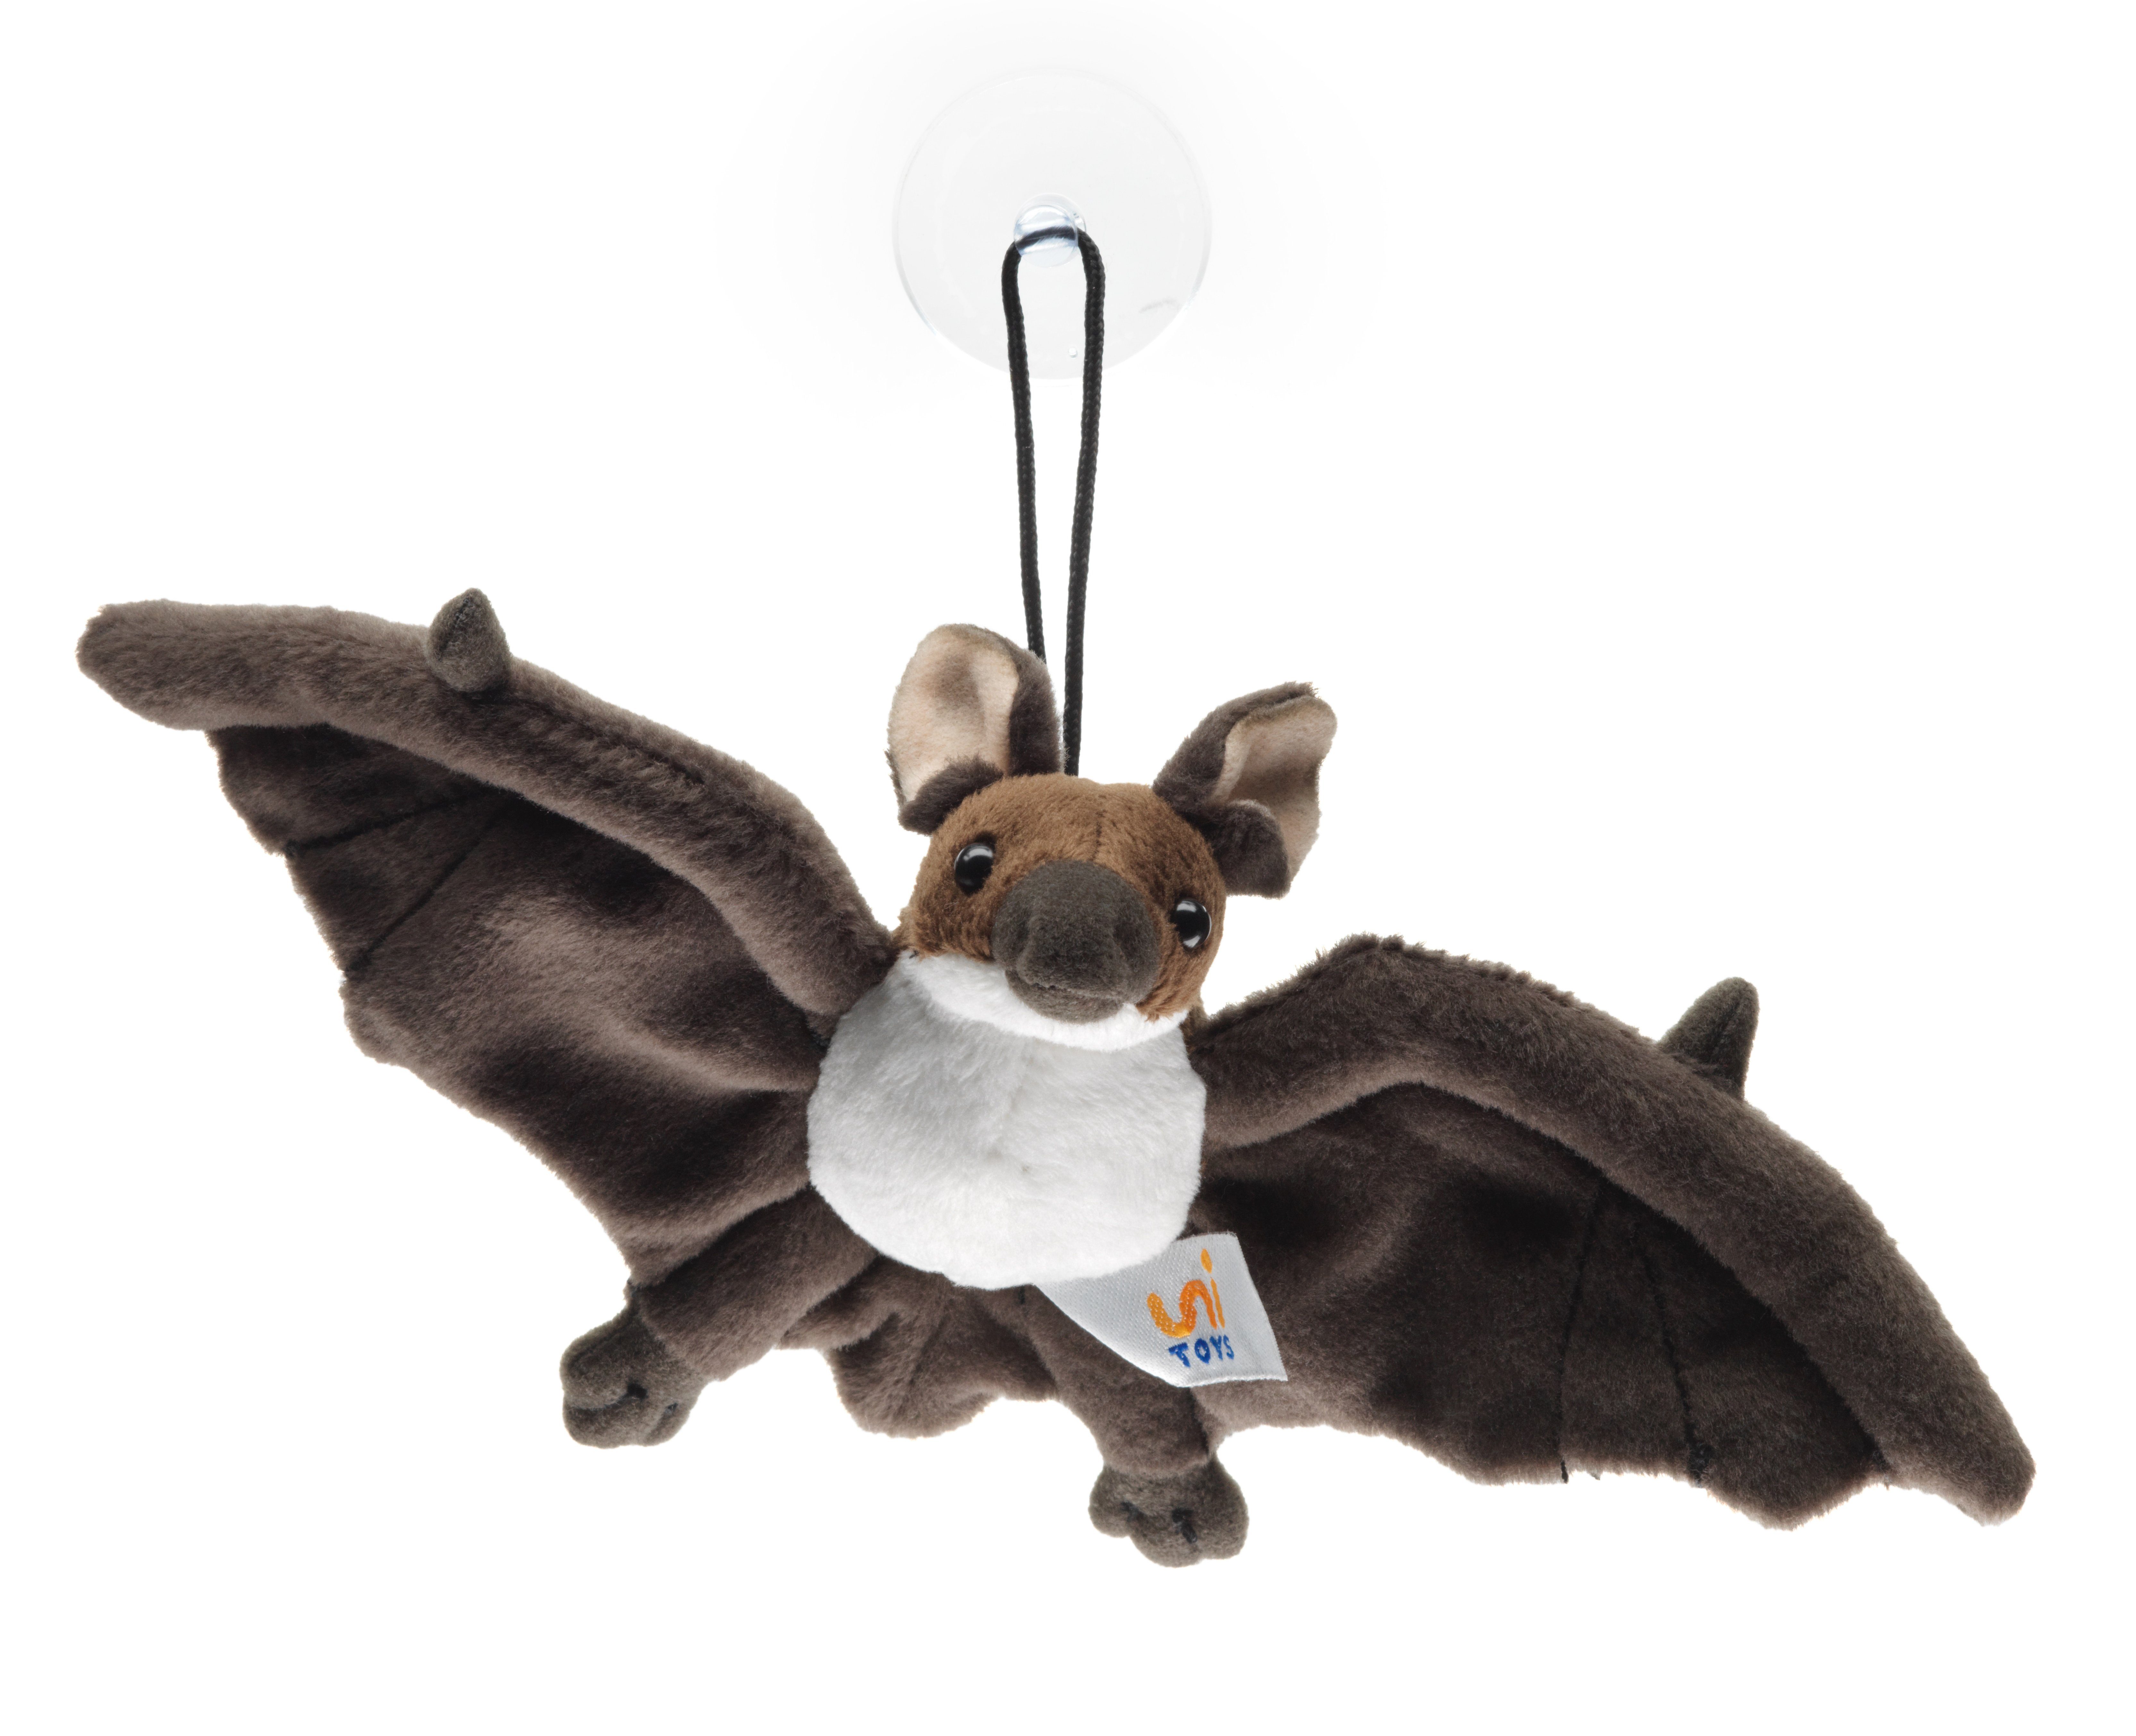 Uni-Toys Kuscheltier Fledermaus - braun oder schwarz - mit Saugnapf - 23 cm - Plüschtier, zu 100 % recyceltes Füllmaterial braun-weiß